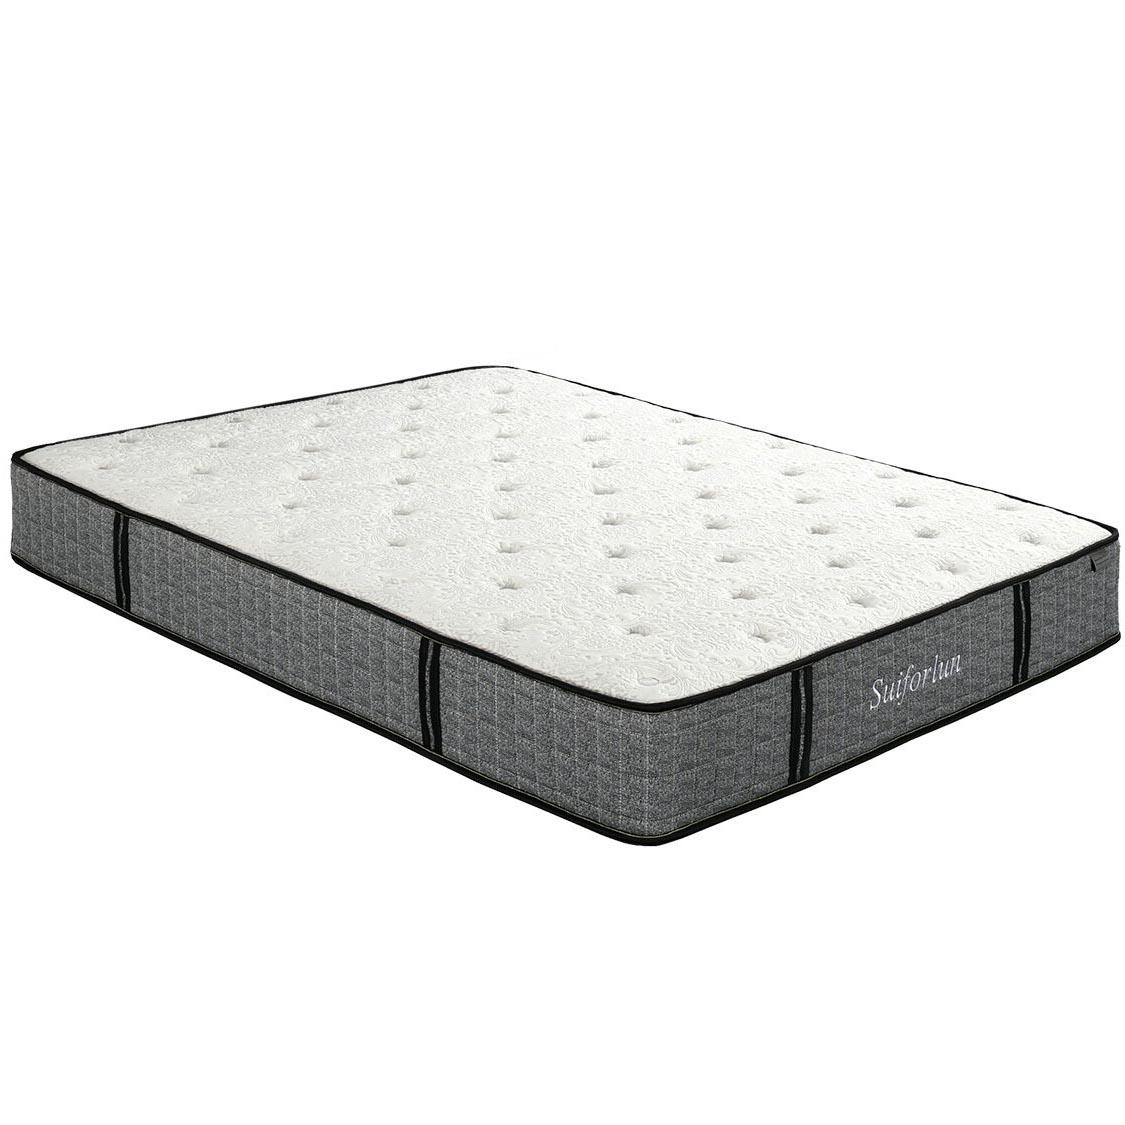 coils innerspring hybrid foam mattress wholesale for home Suiforlun mattress-2